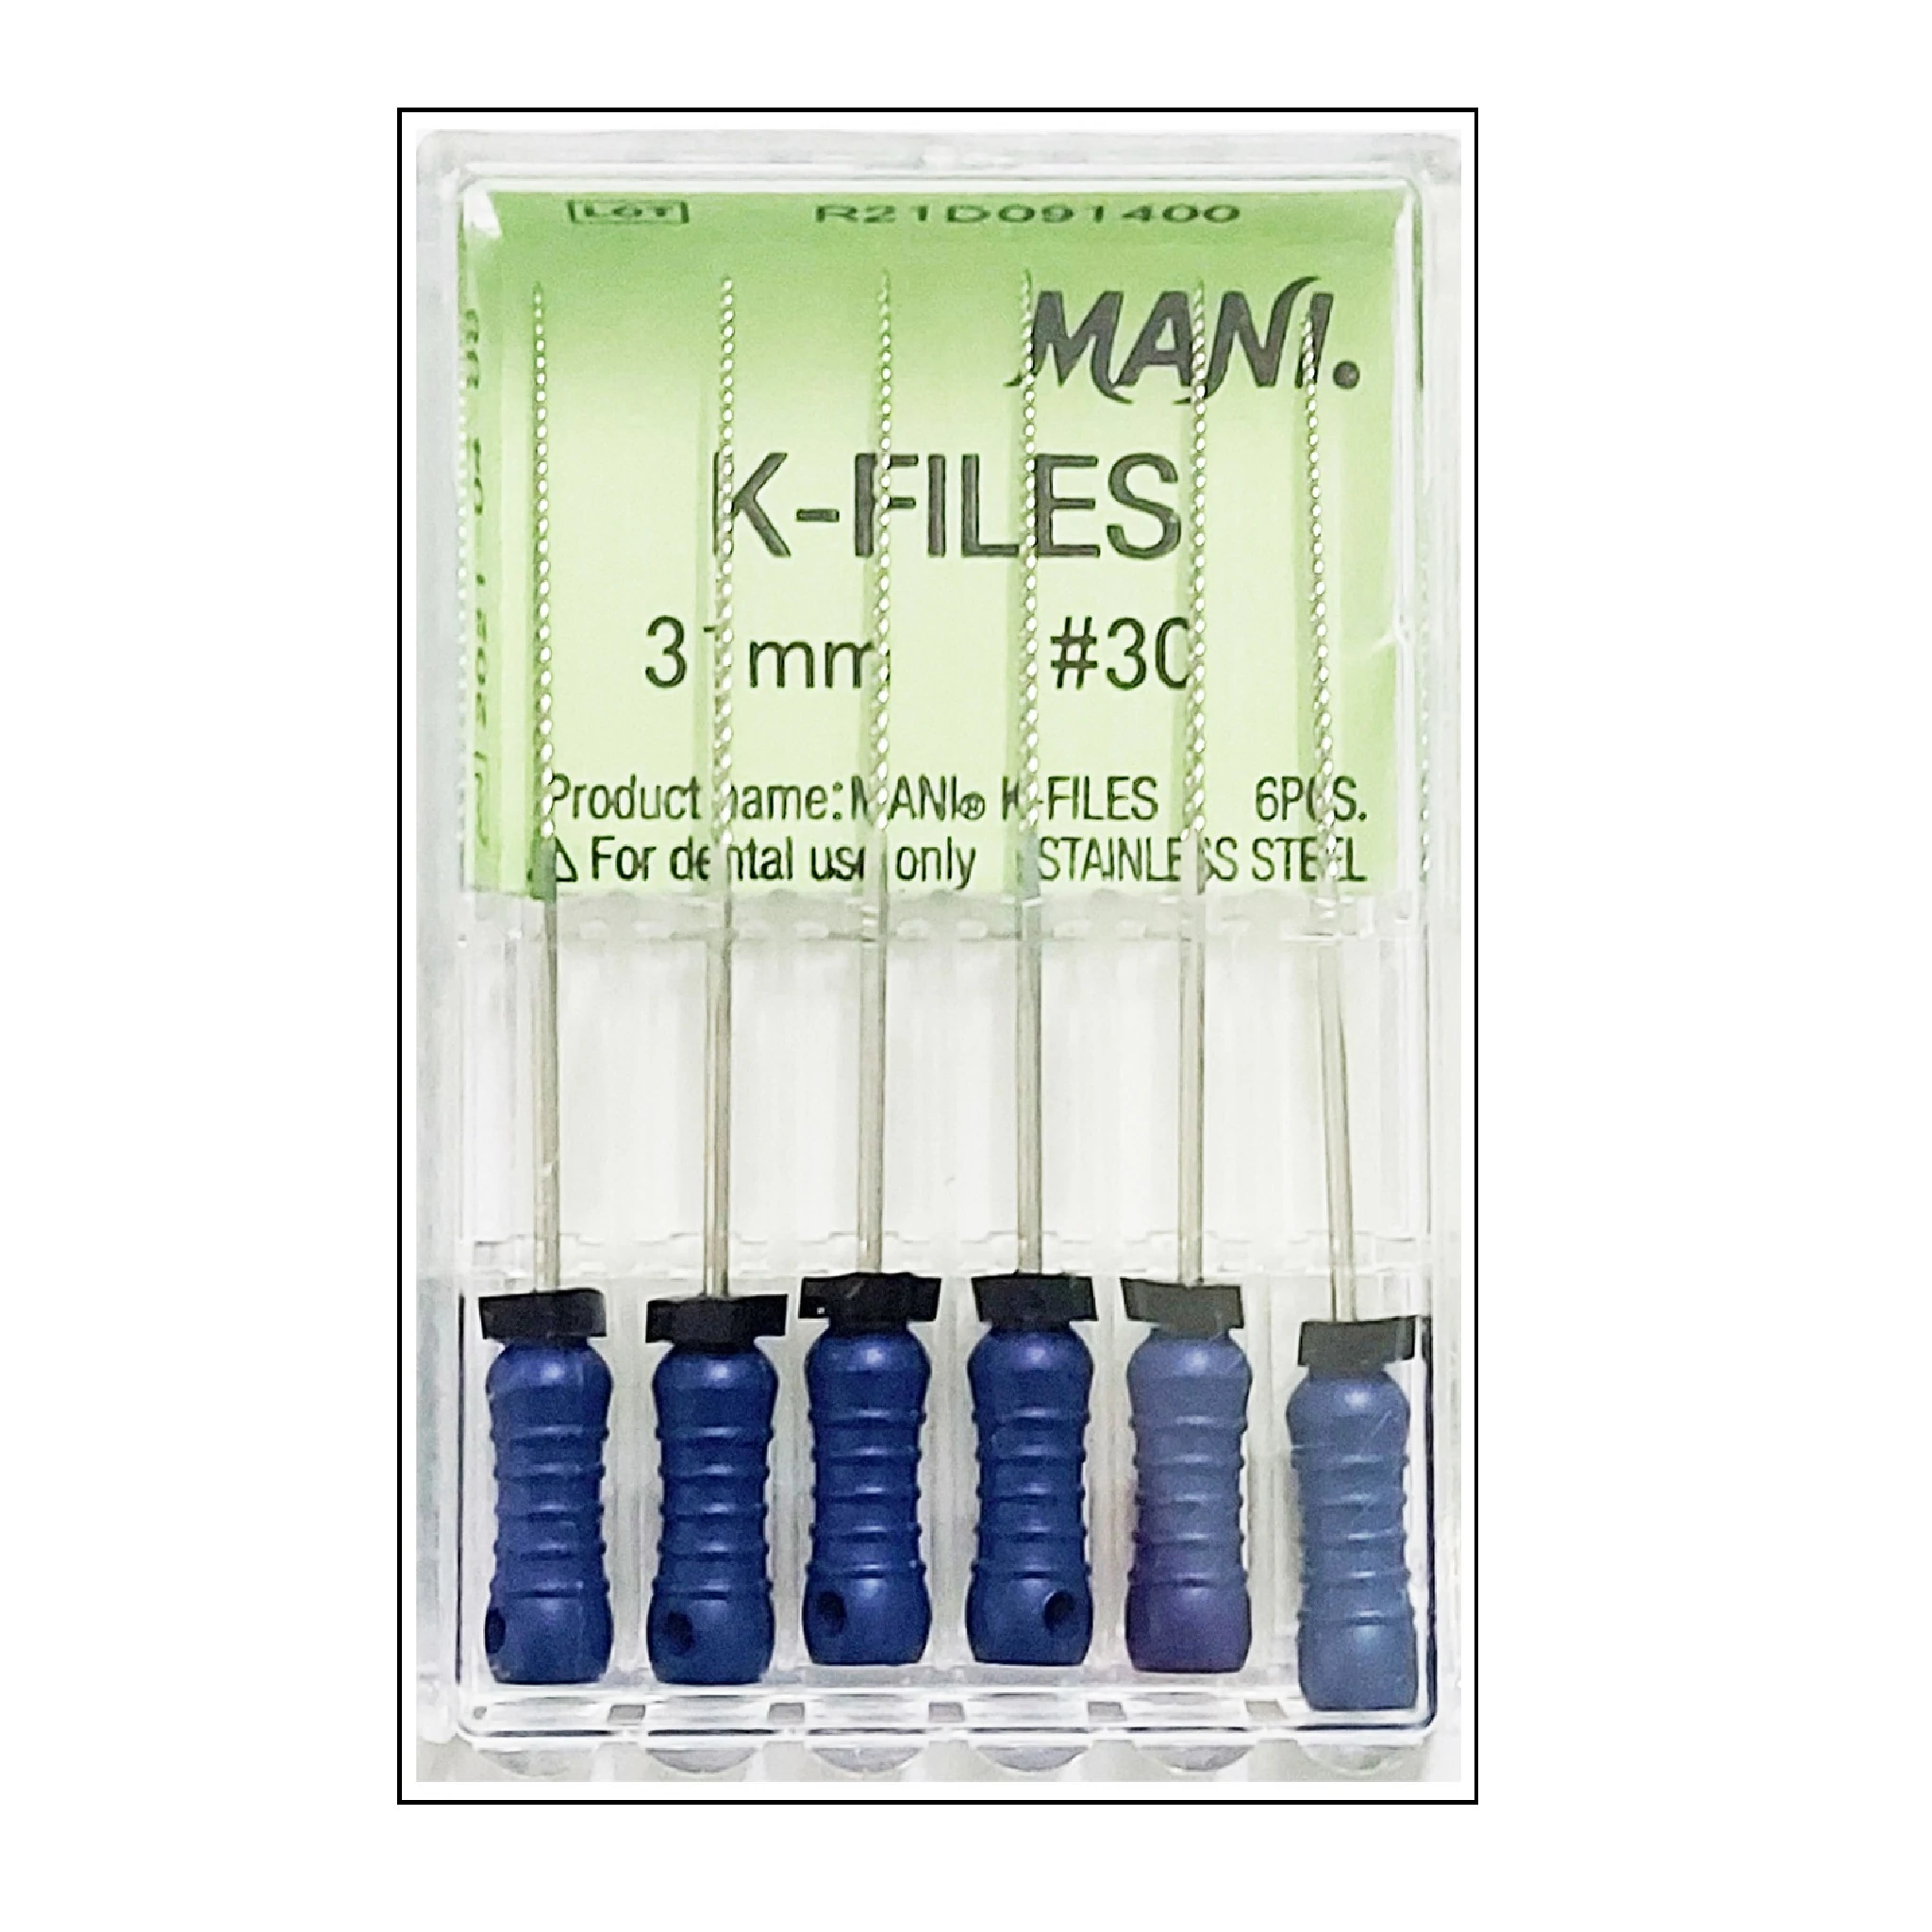 K-File 31mm #30 - Mani